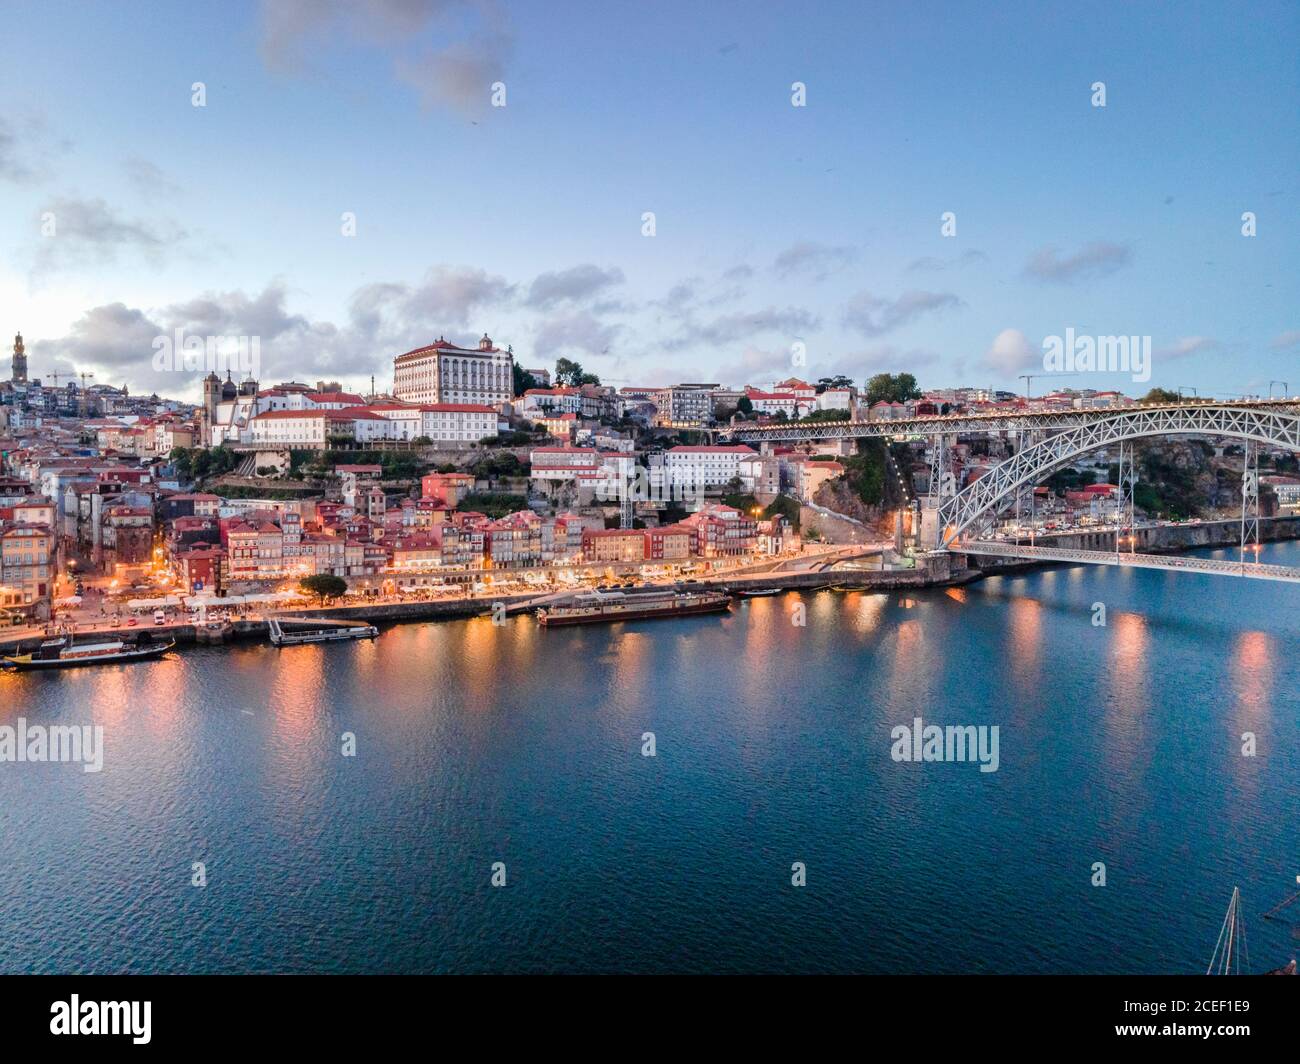 Il ponte più famoso di Porto , Ponte dom Luis i , splendida vista sulla città la sera. Il luogo visitato da turisti provenienti da molti paesi. Portogallo Foto Stock